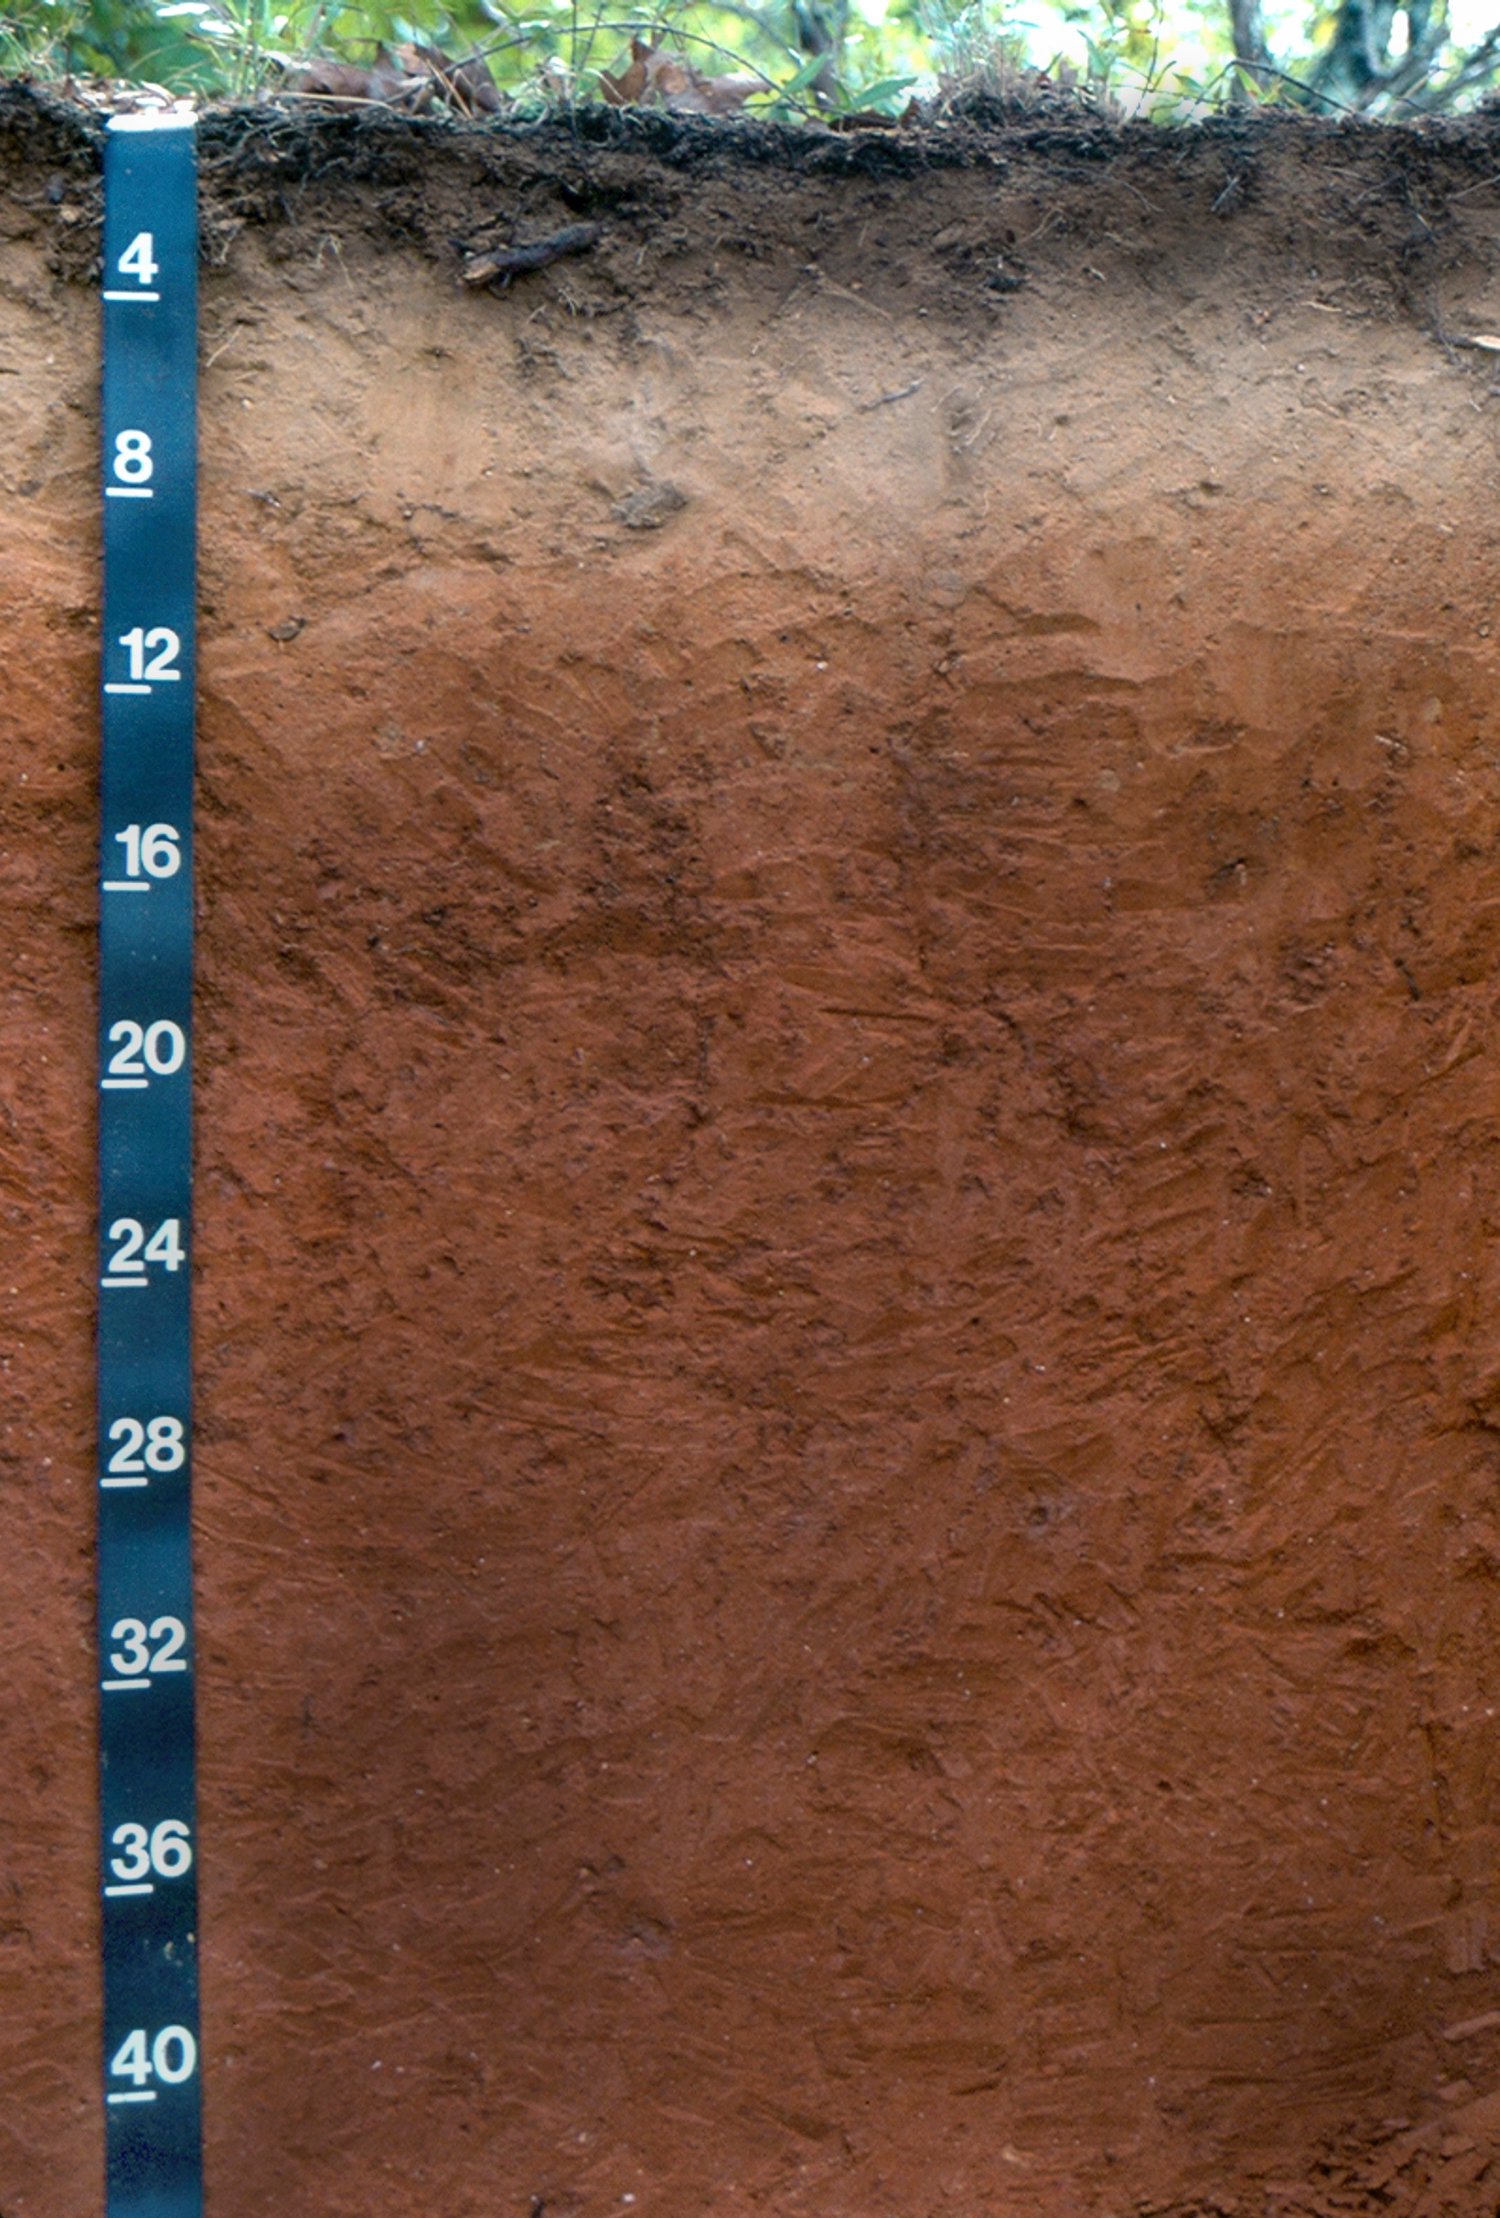 3 soil layers